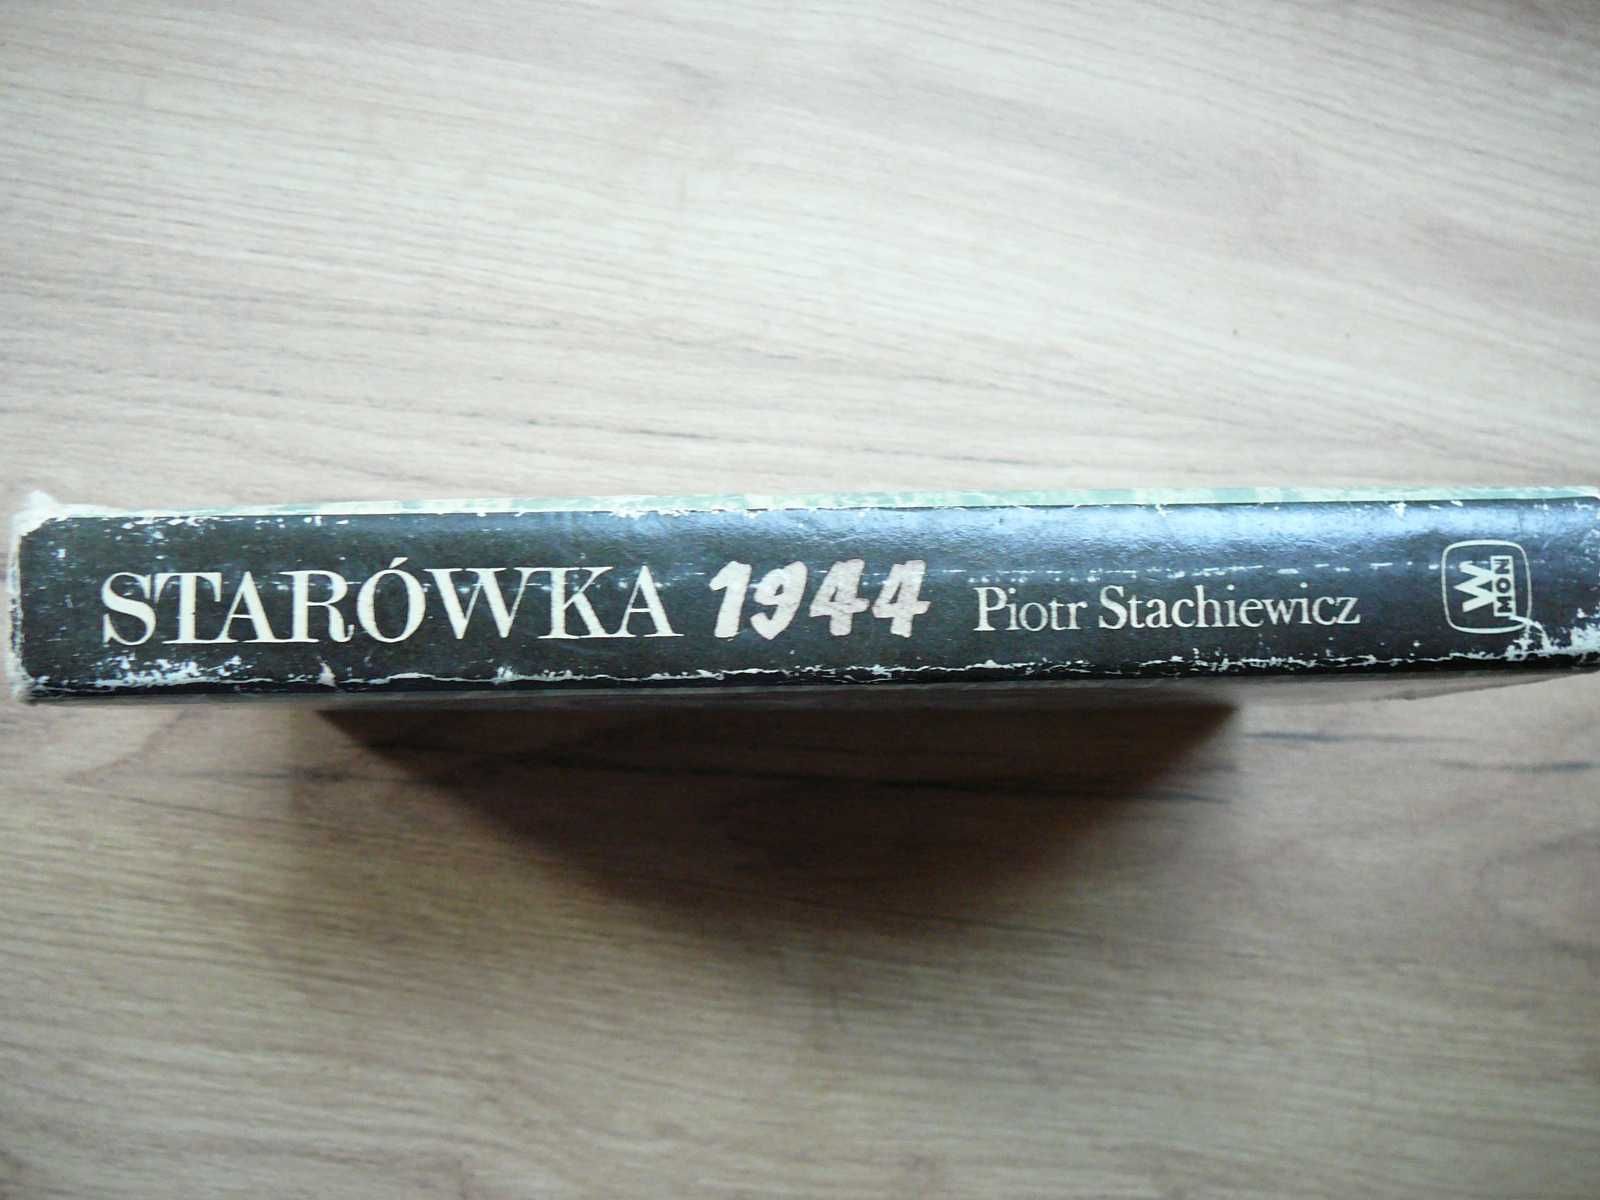 Starówka 1944 Piotr Stachiewicz